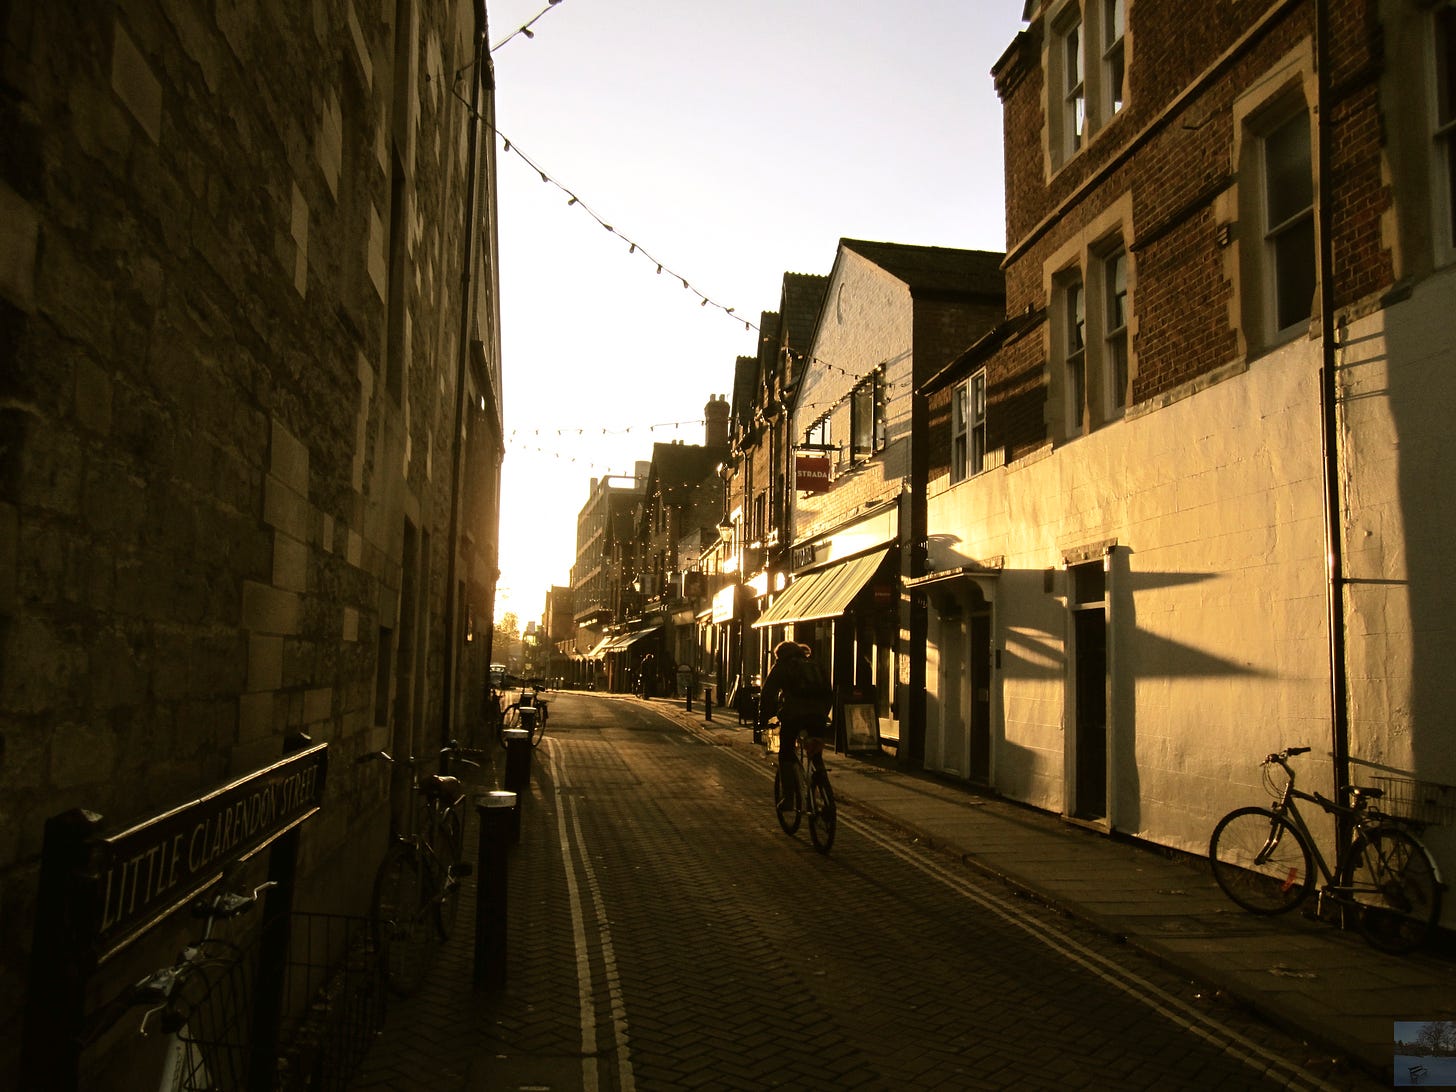 Cyclist on an Oxford lane.